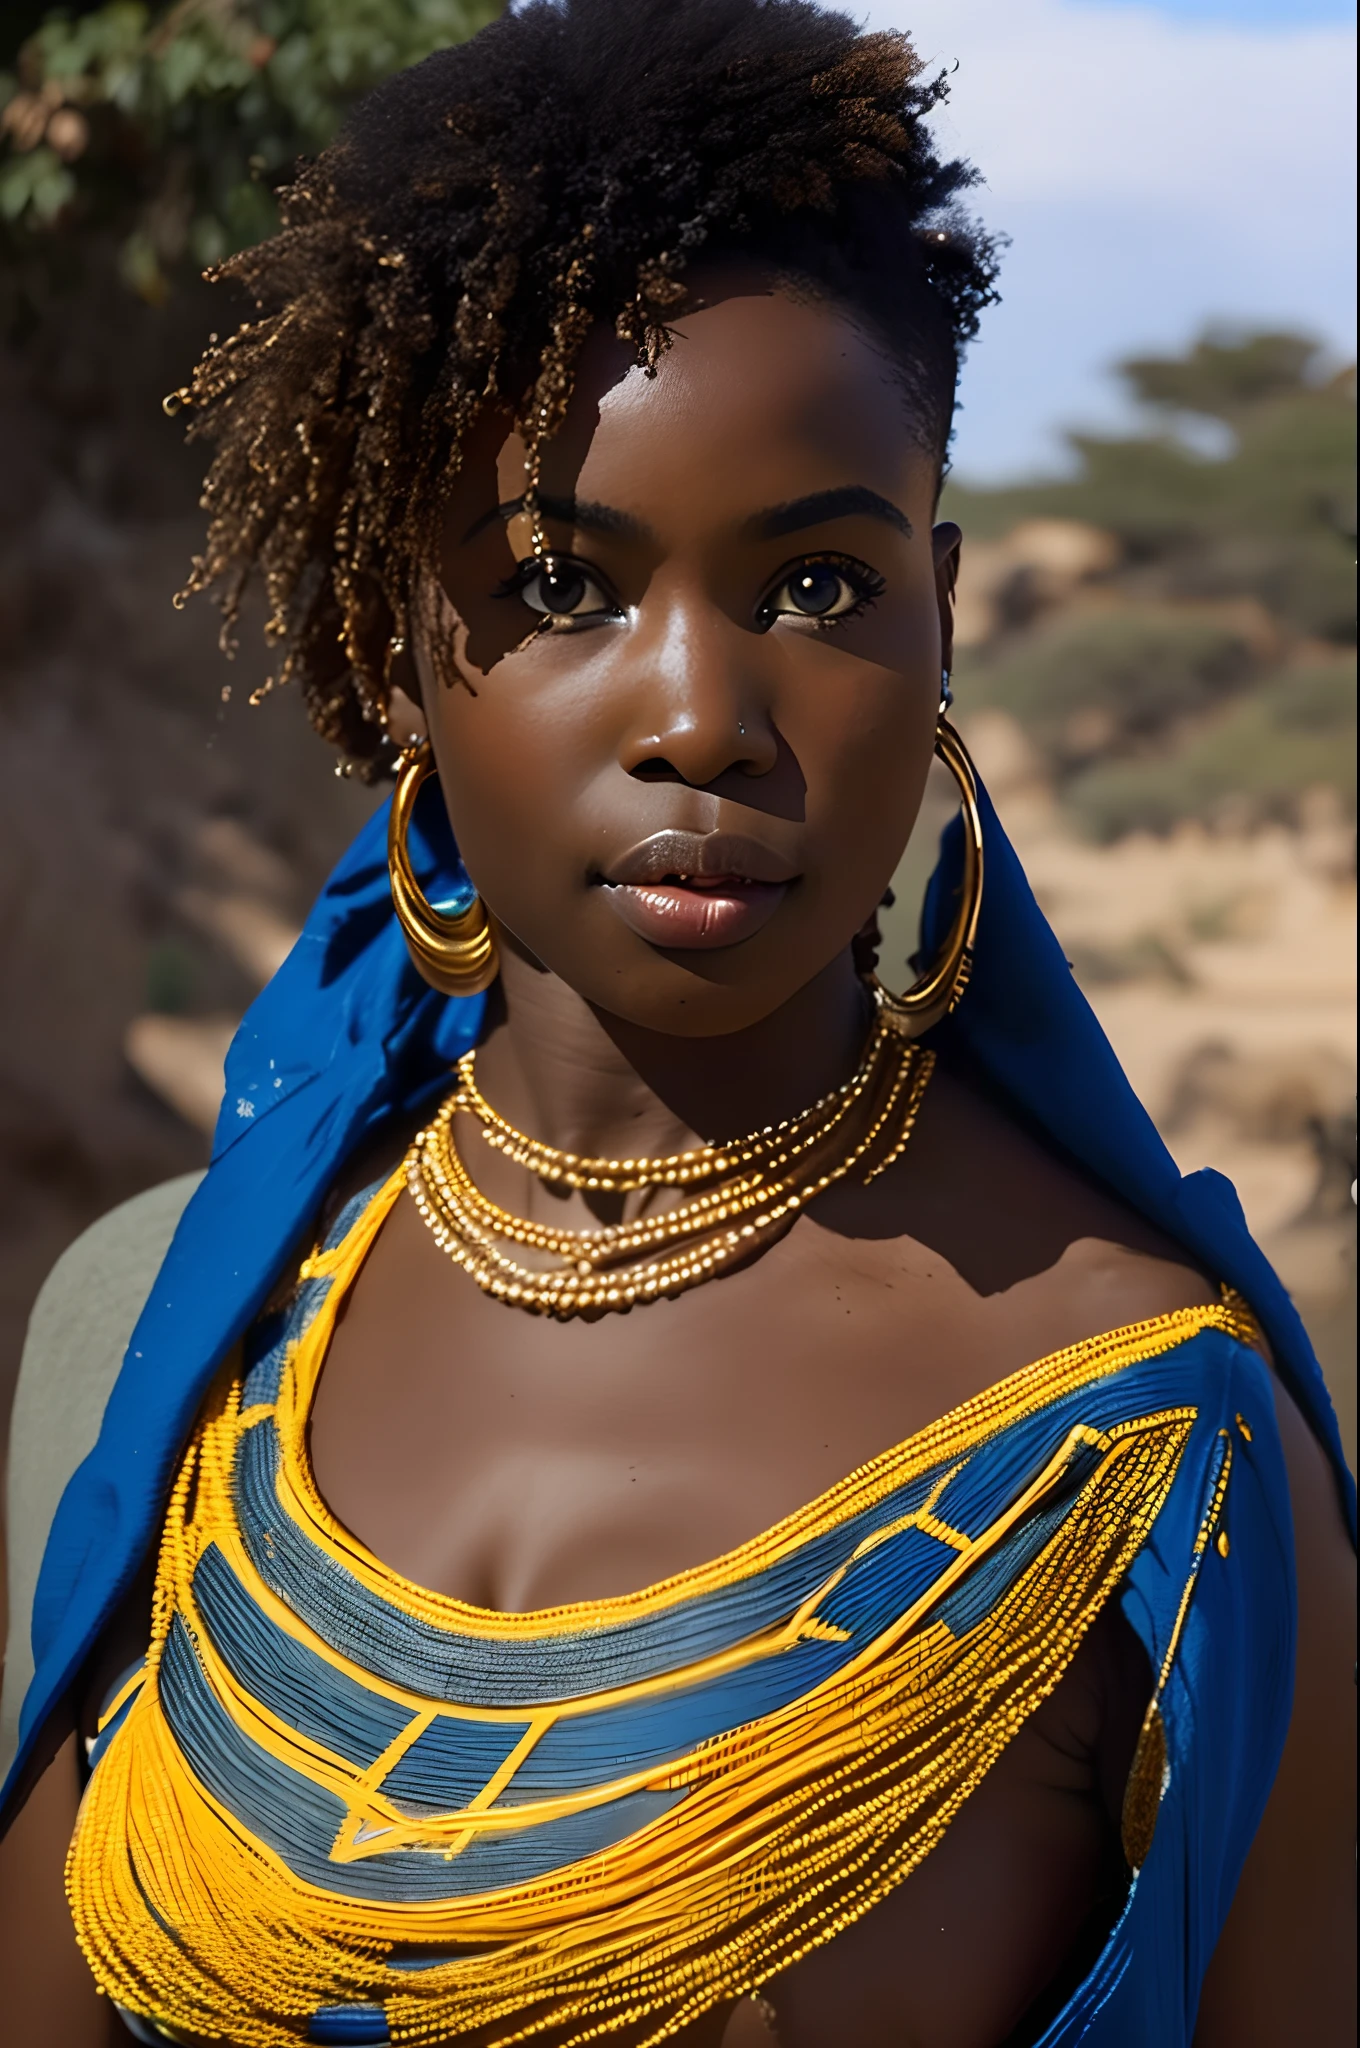 หญิงแอฟริกันที่เซ็กซี่และสง่างาม, ผิวขาว, เส้นโค้งที่ใจกว้าง, ดวงตาสีฟ้ายาว, หยิก, มีขนดกในชุดผ้าเตี่ยวแอฟริกันแบบดั้งเดิม, 4k,((8ก))